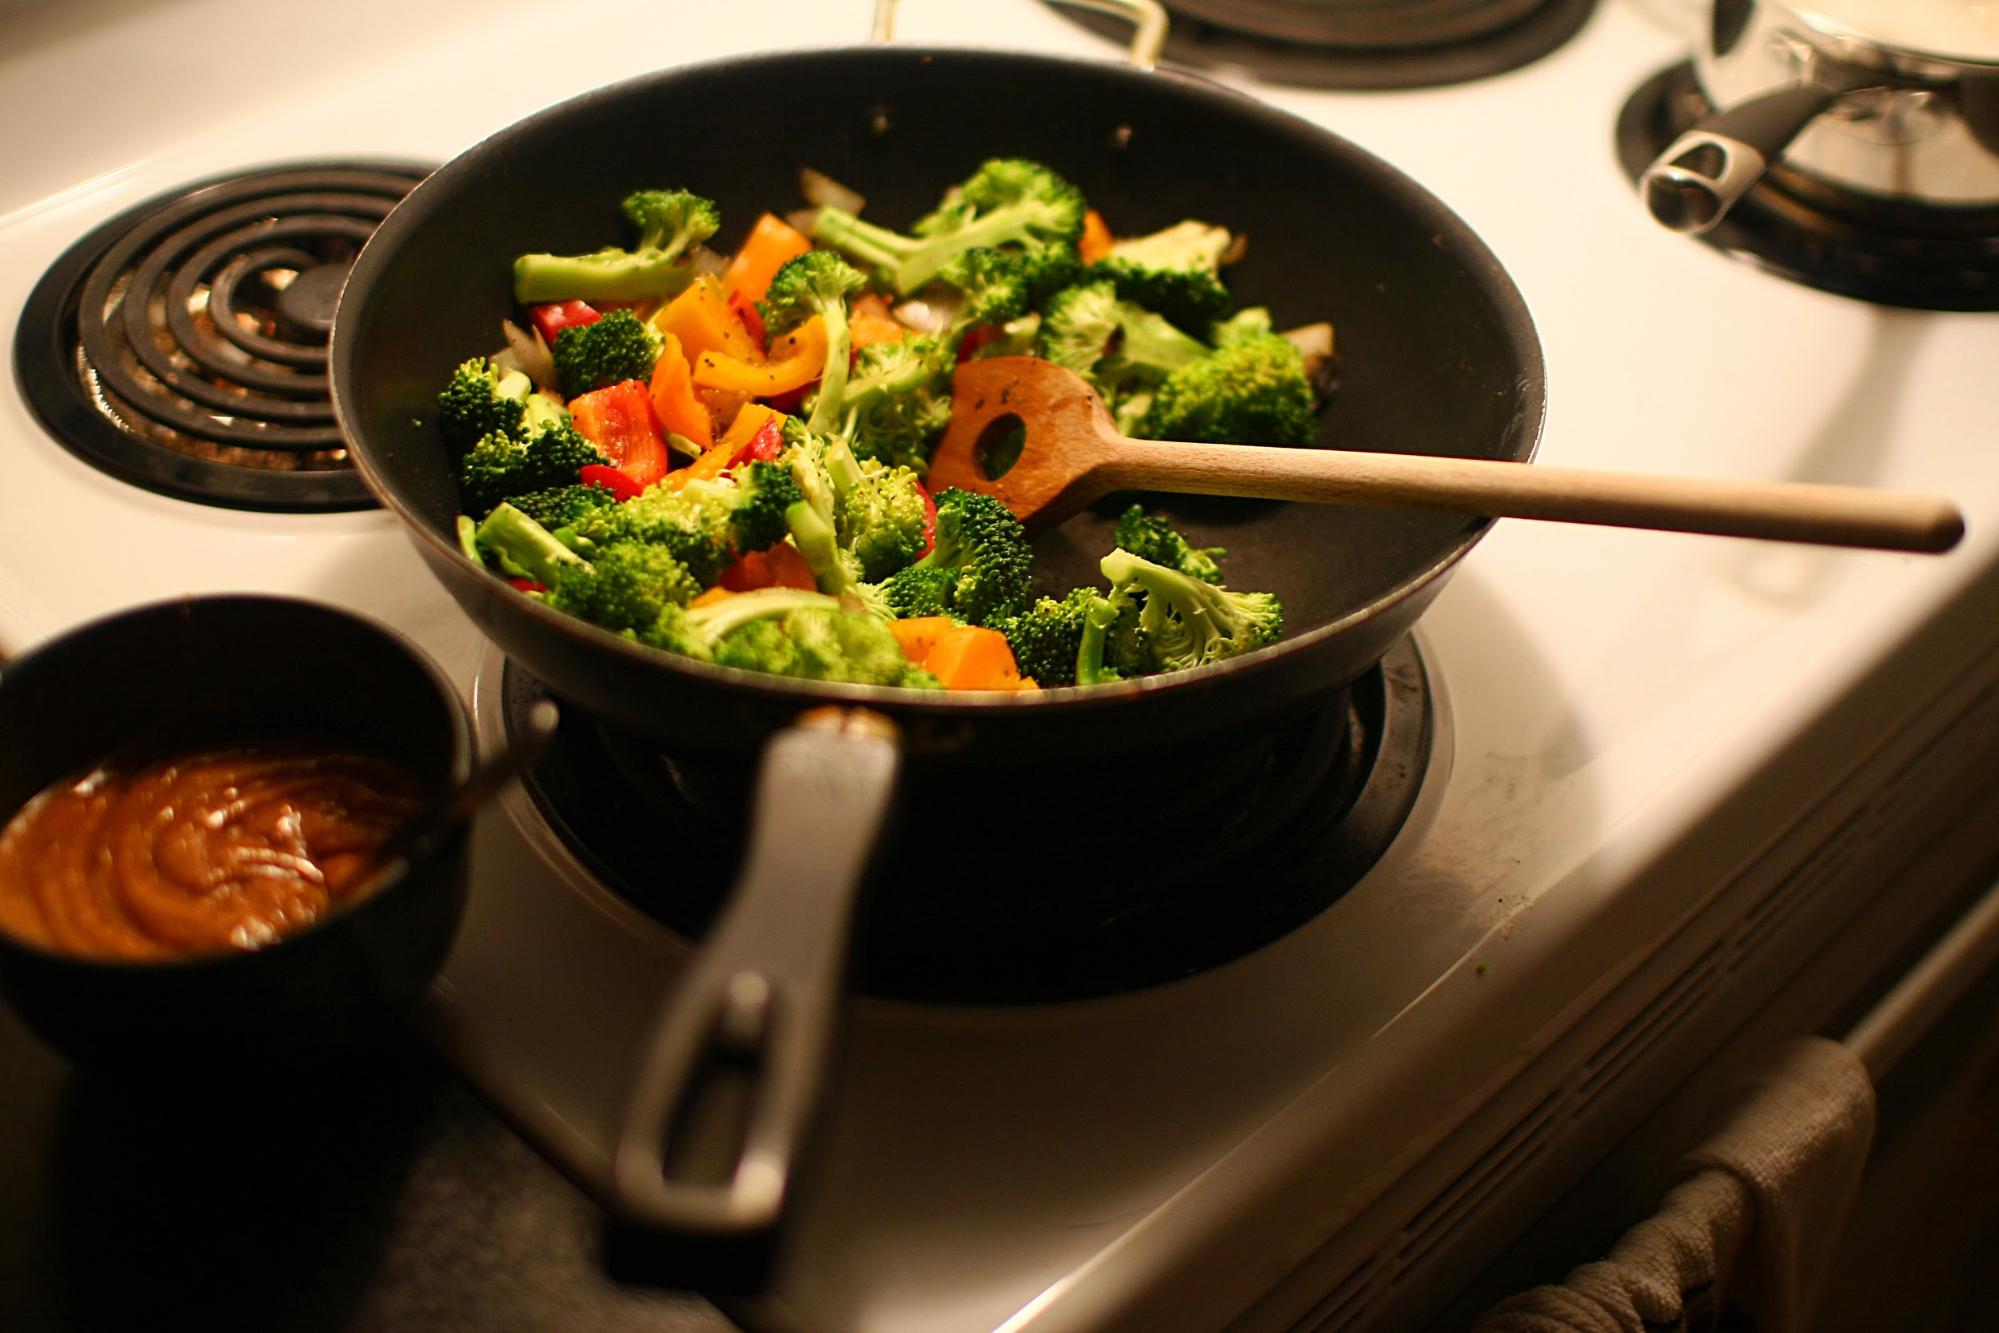 frying veggies - common kitchen mistakes